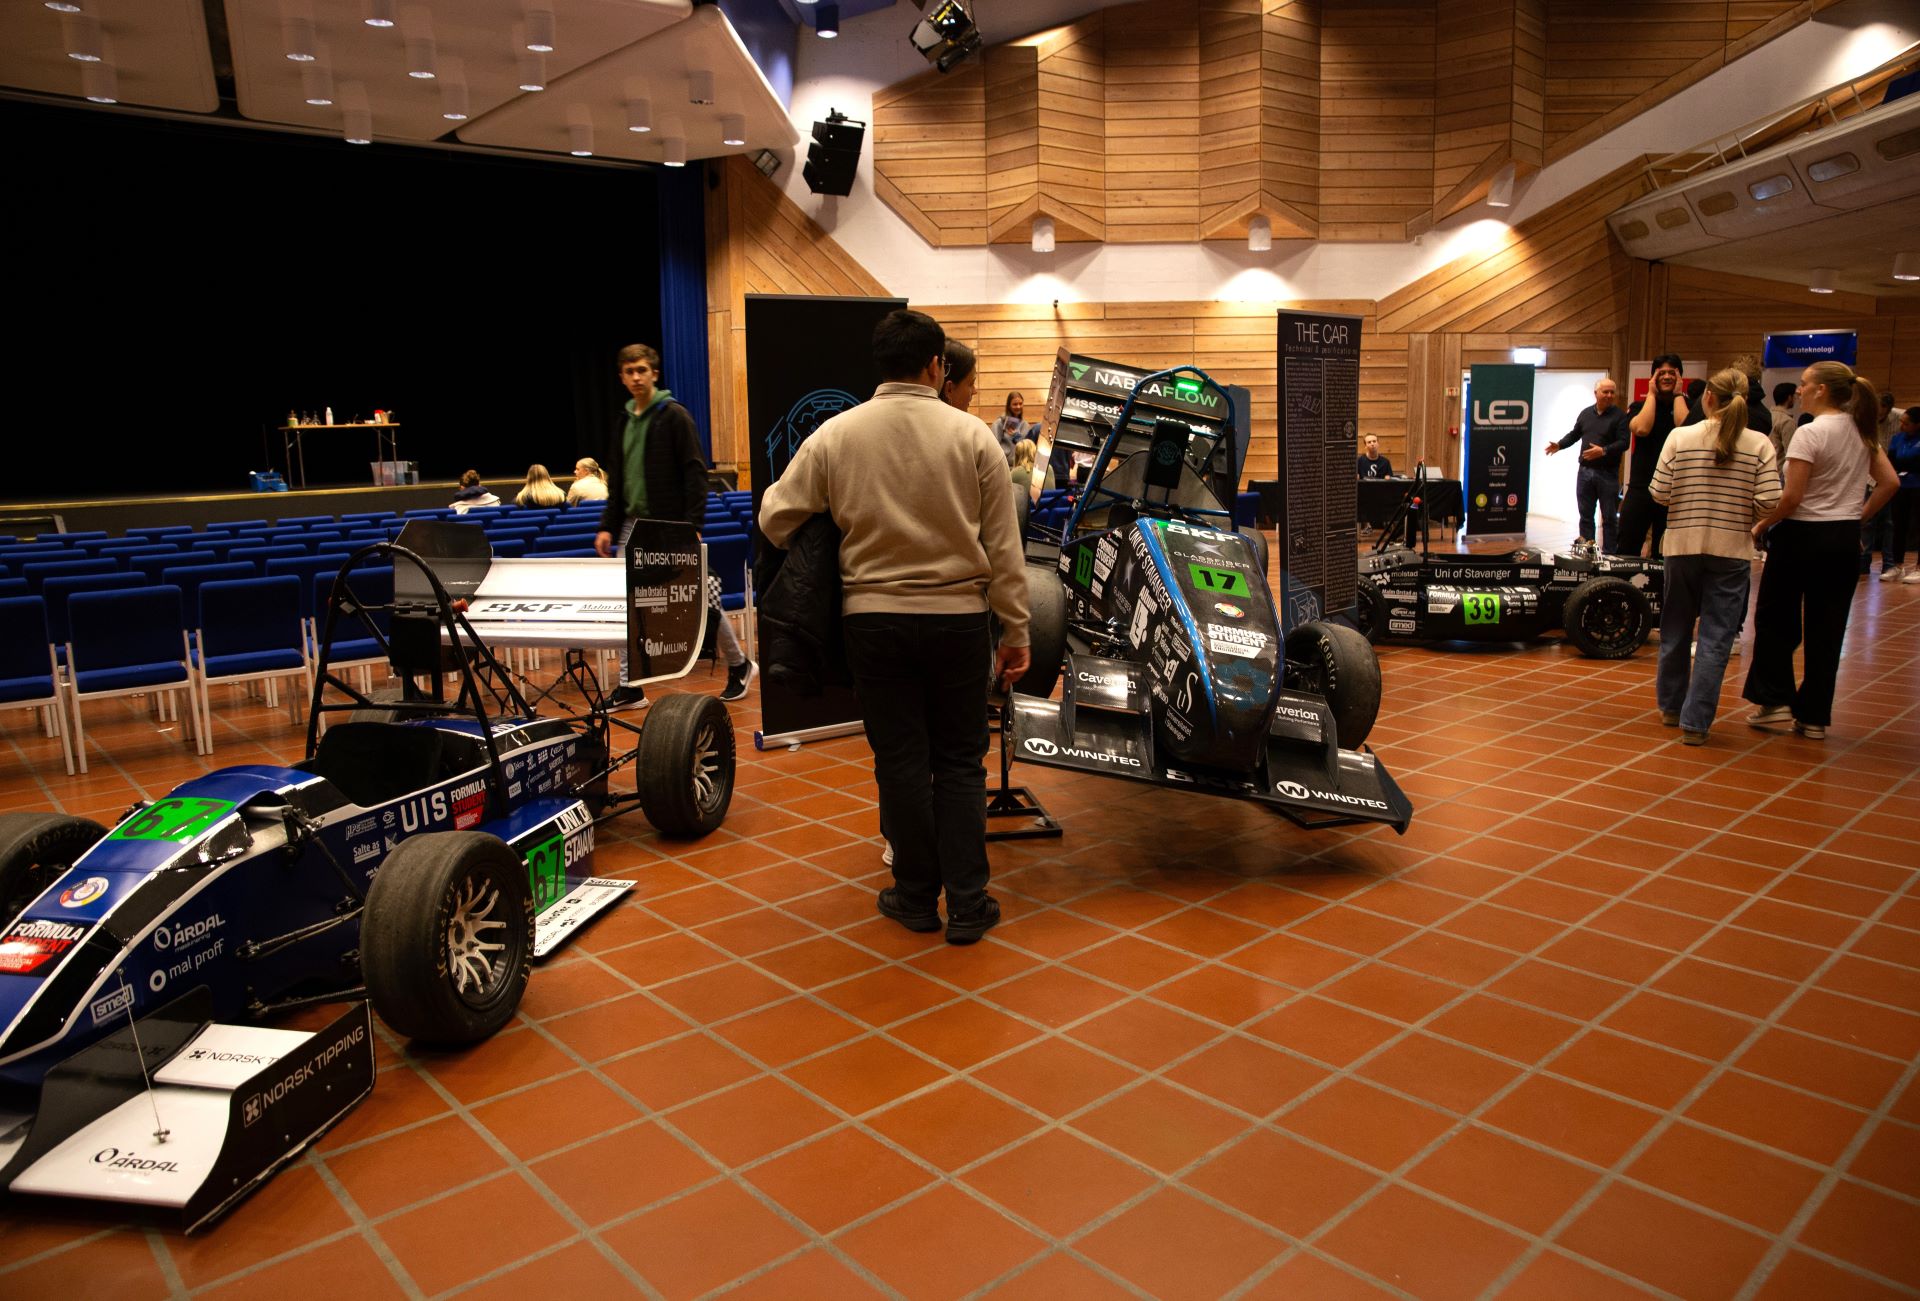 Biler på utstilling inne i hall